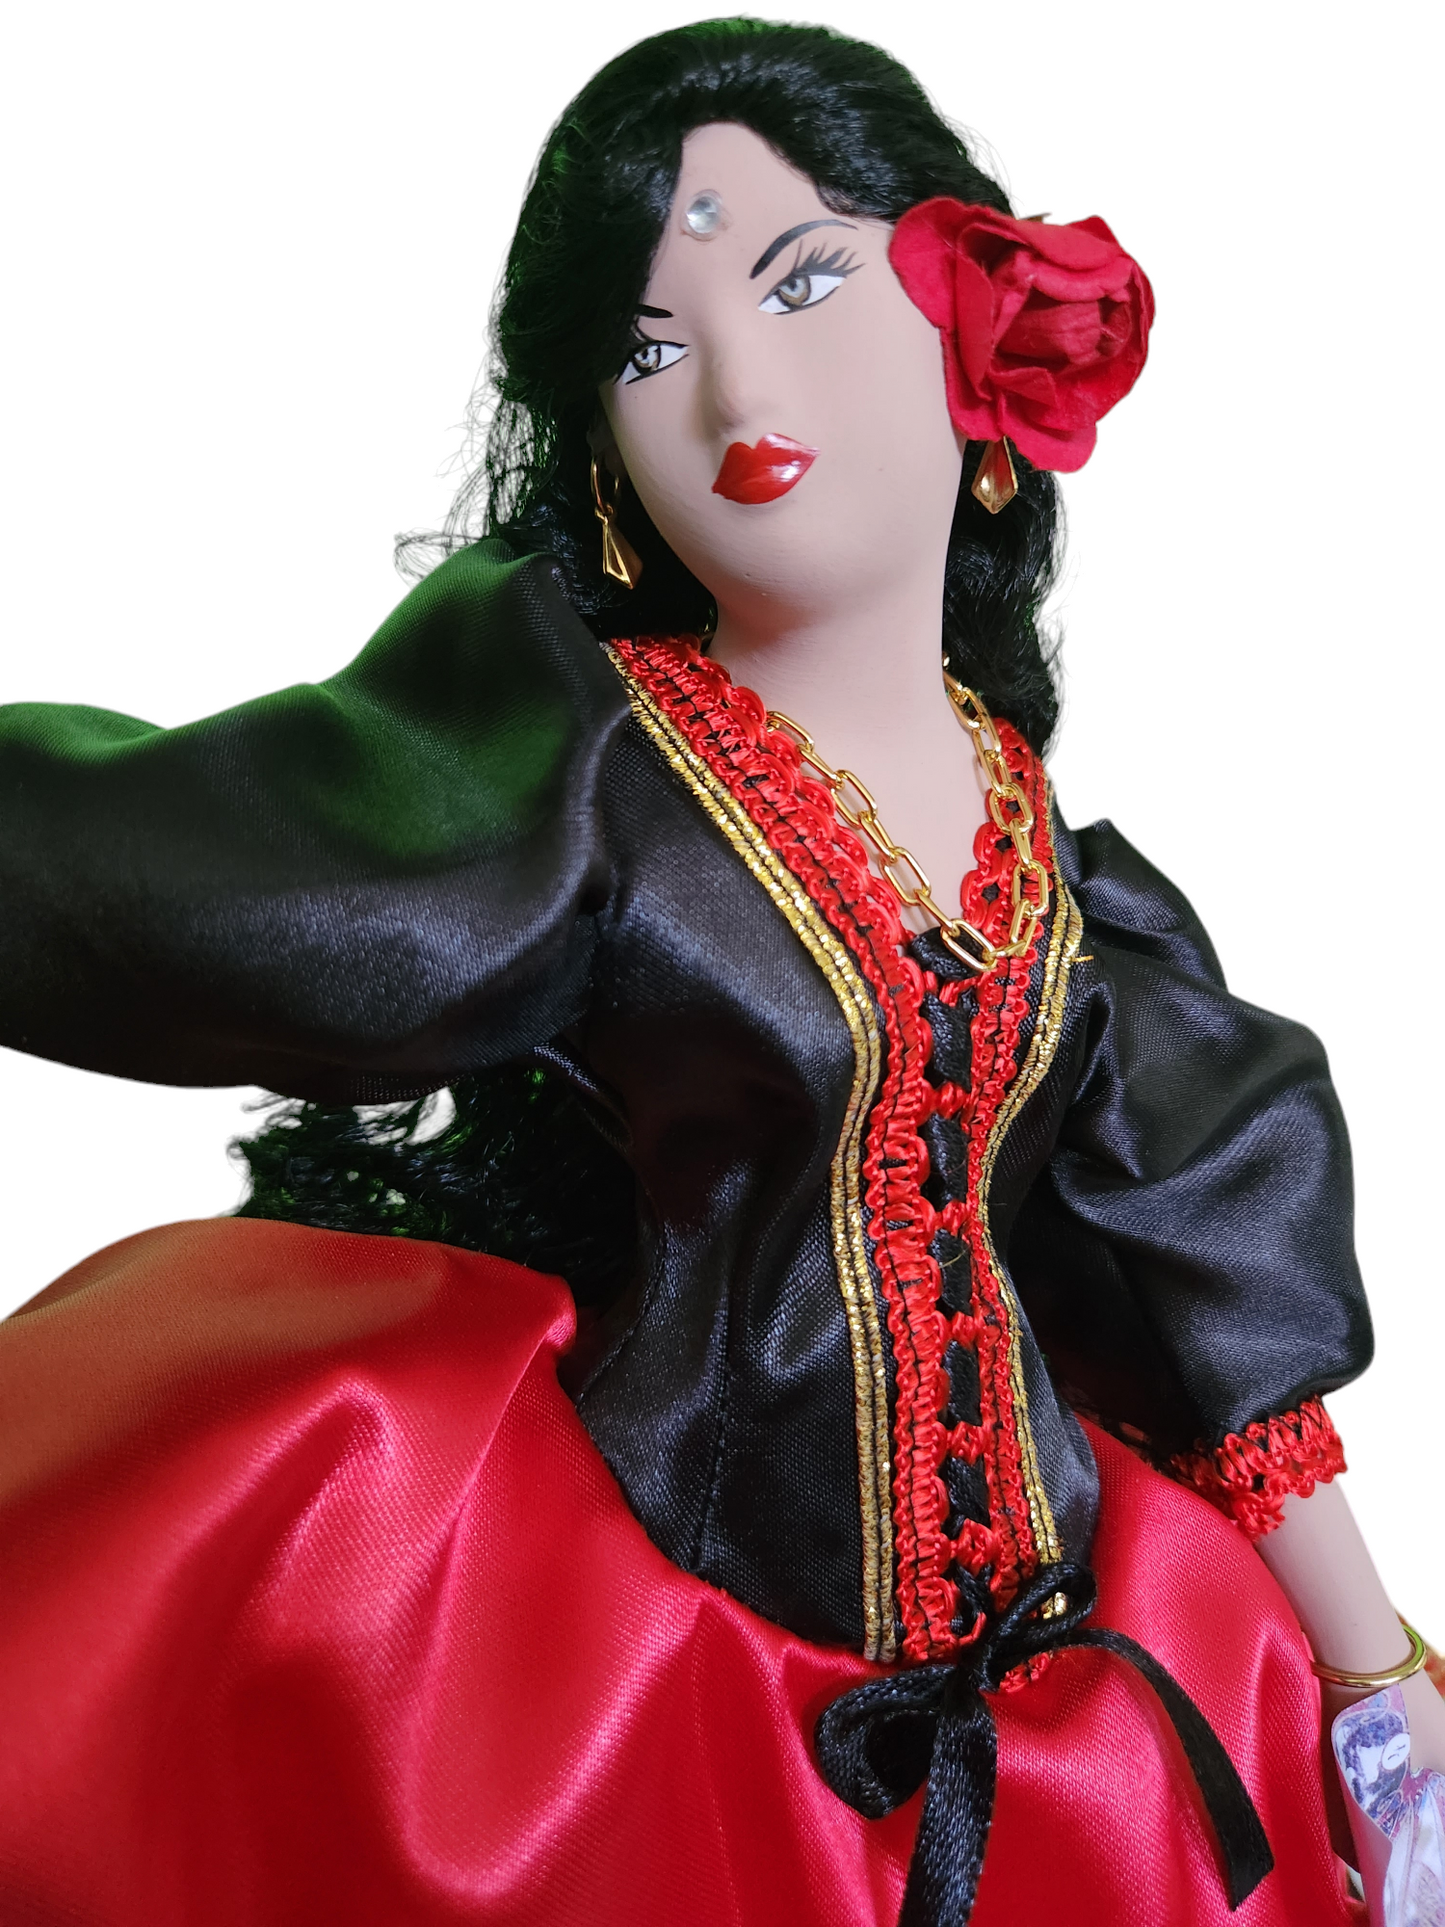 Gypsy doll